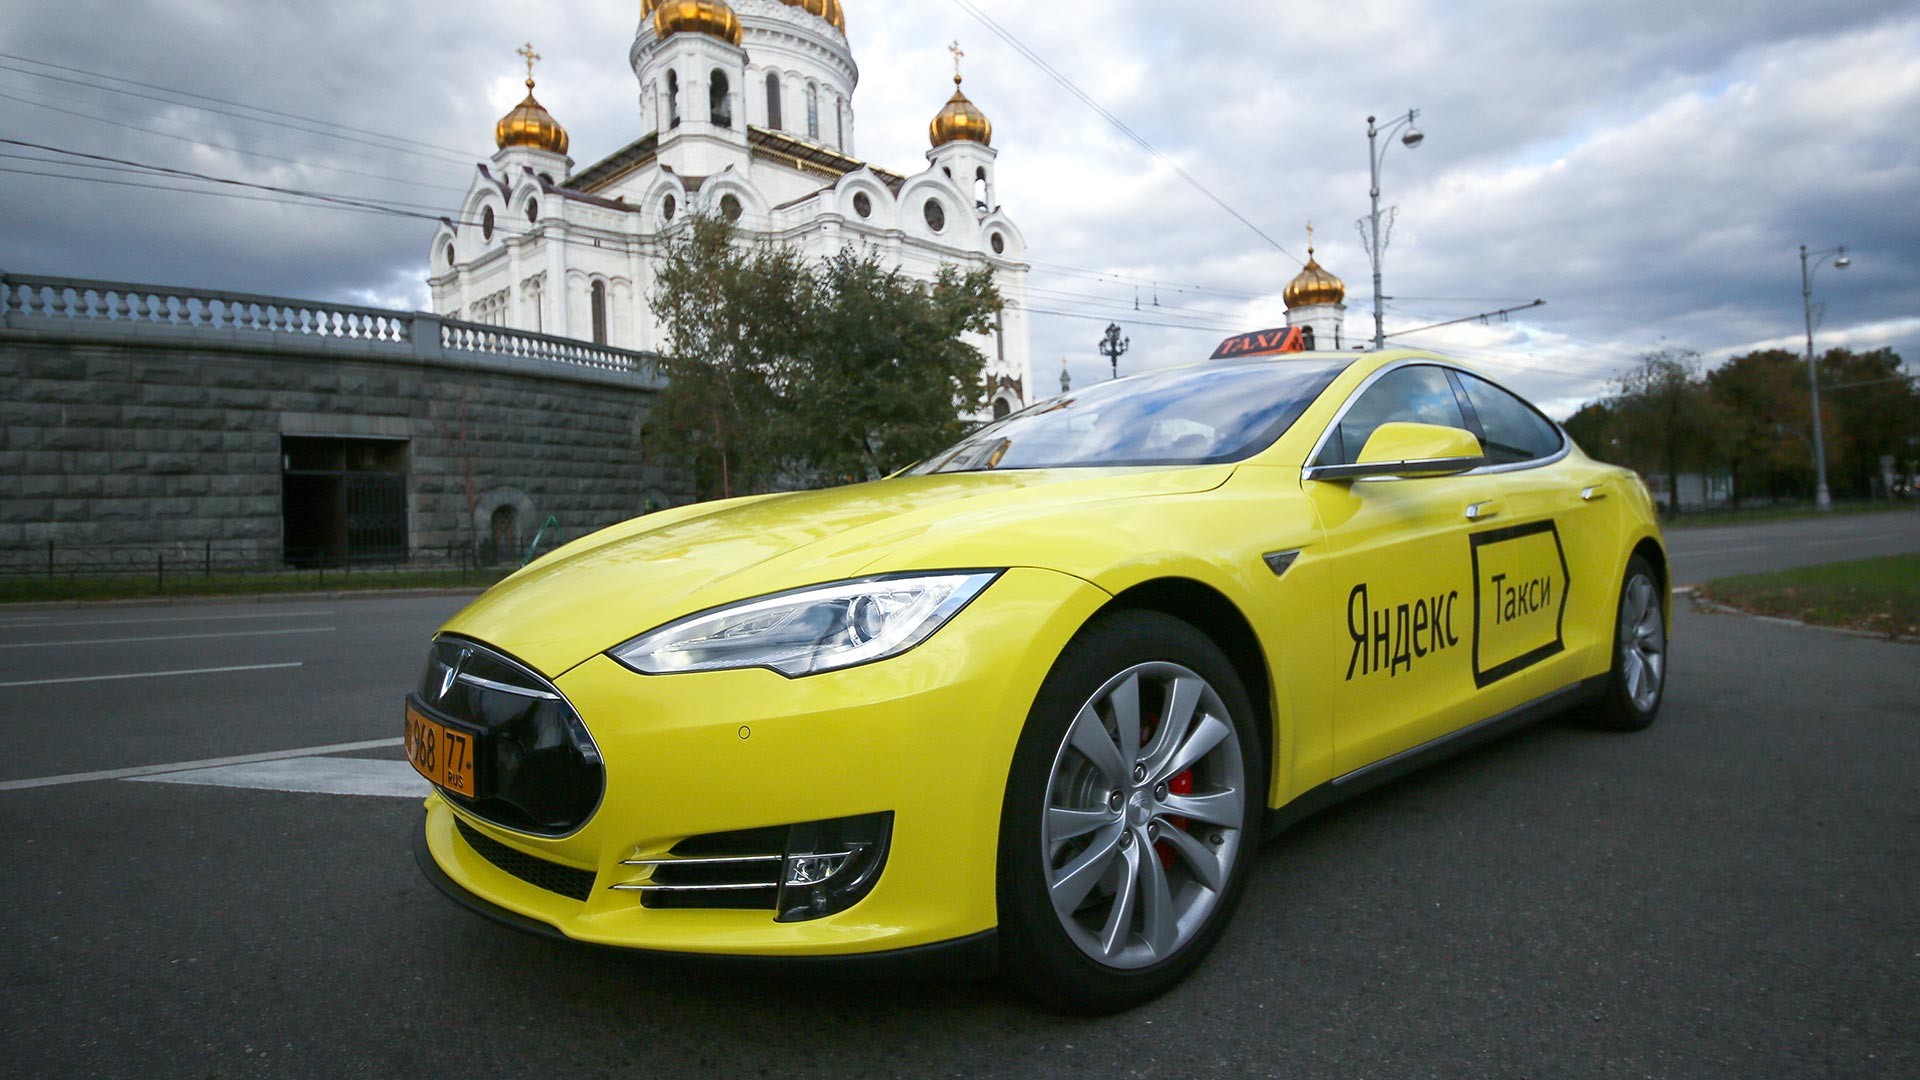 Le premier taxi électrique Tesla du service Yandex.Taxi dans l'une des rues de Moscou
